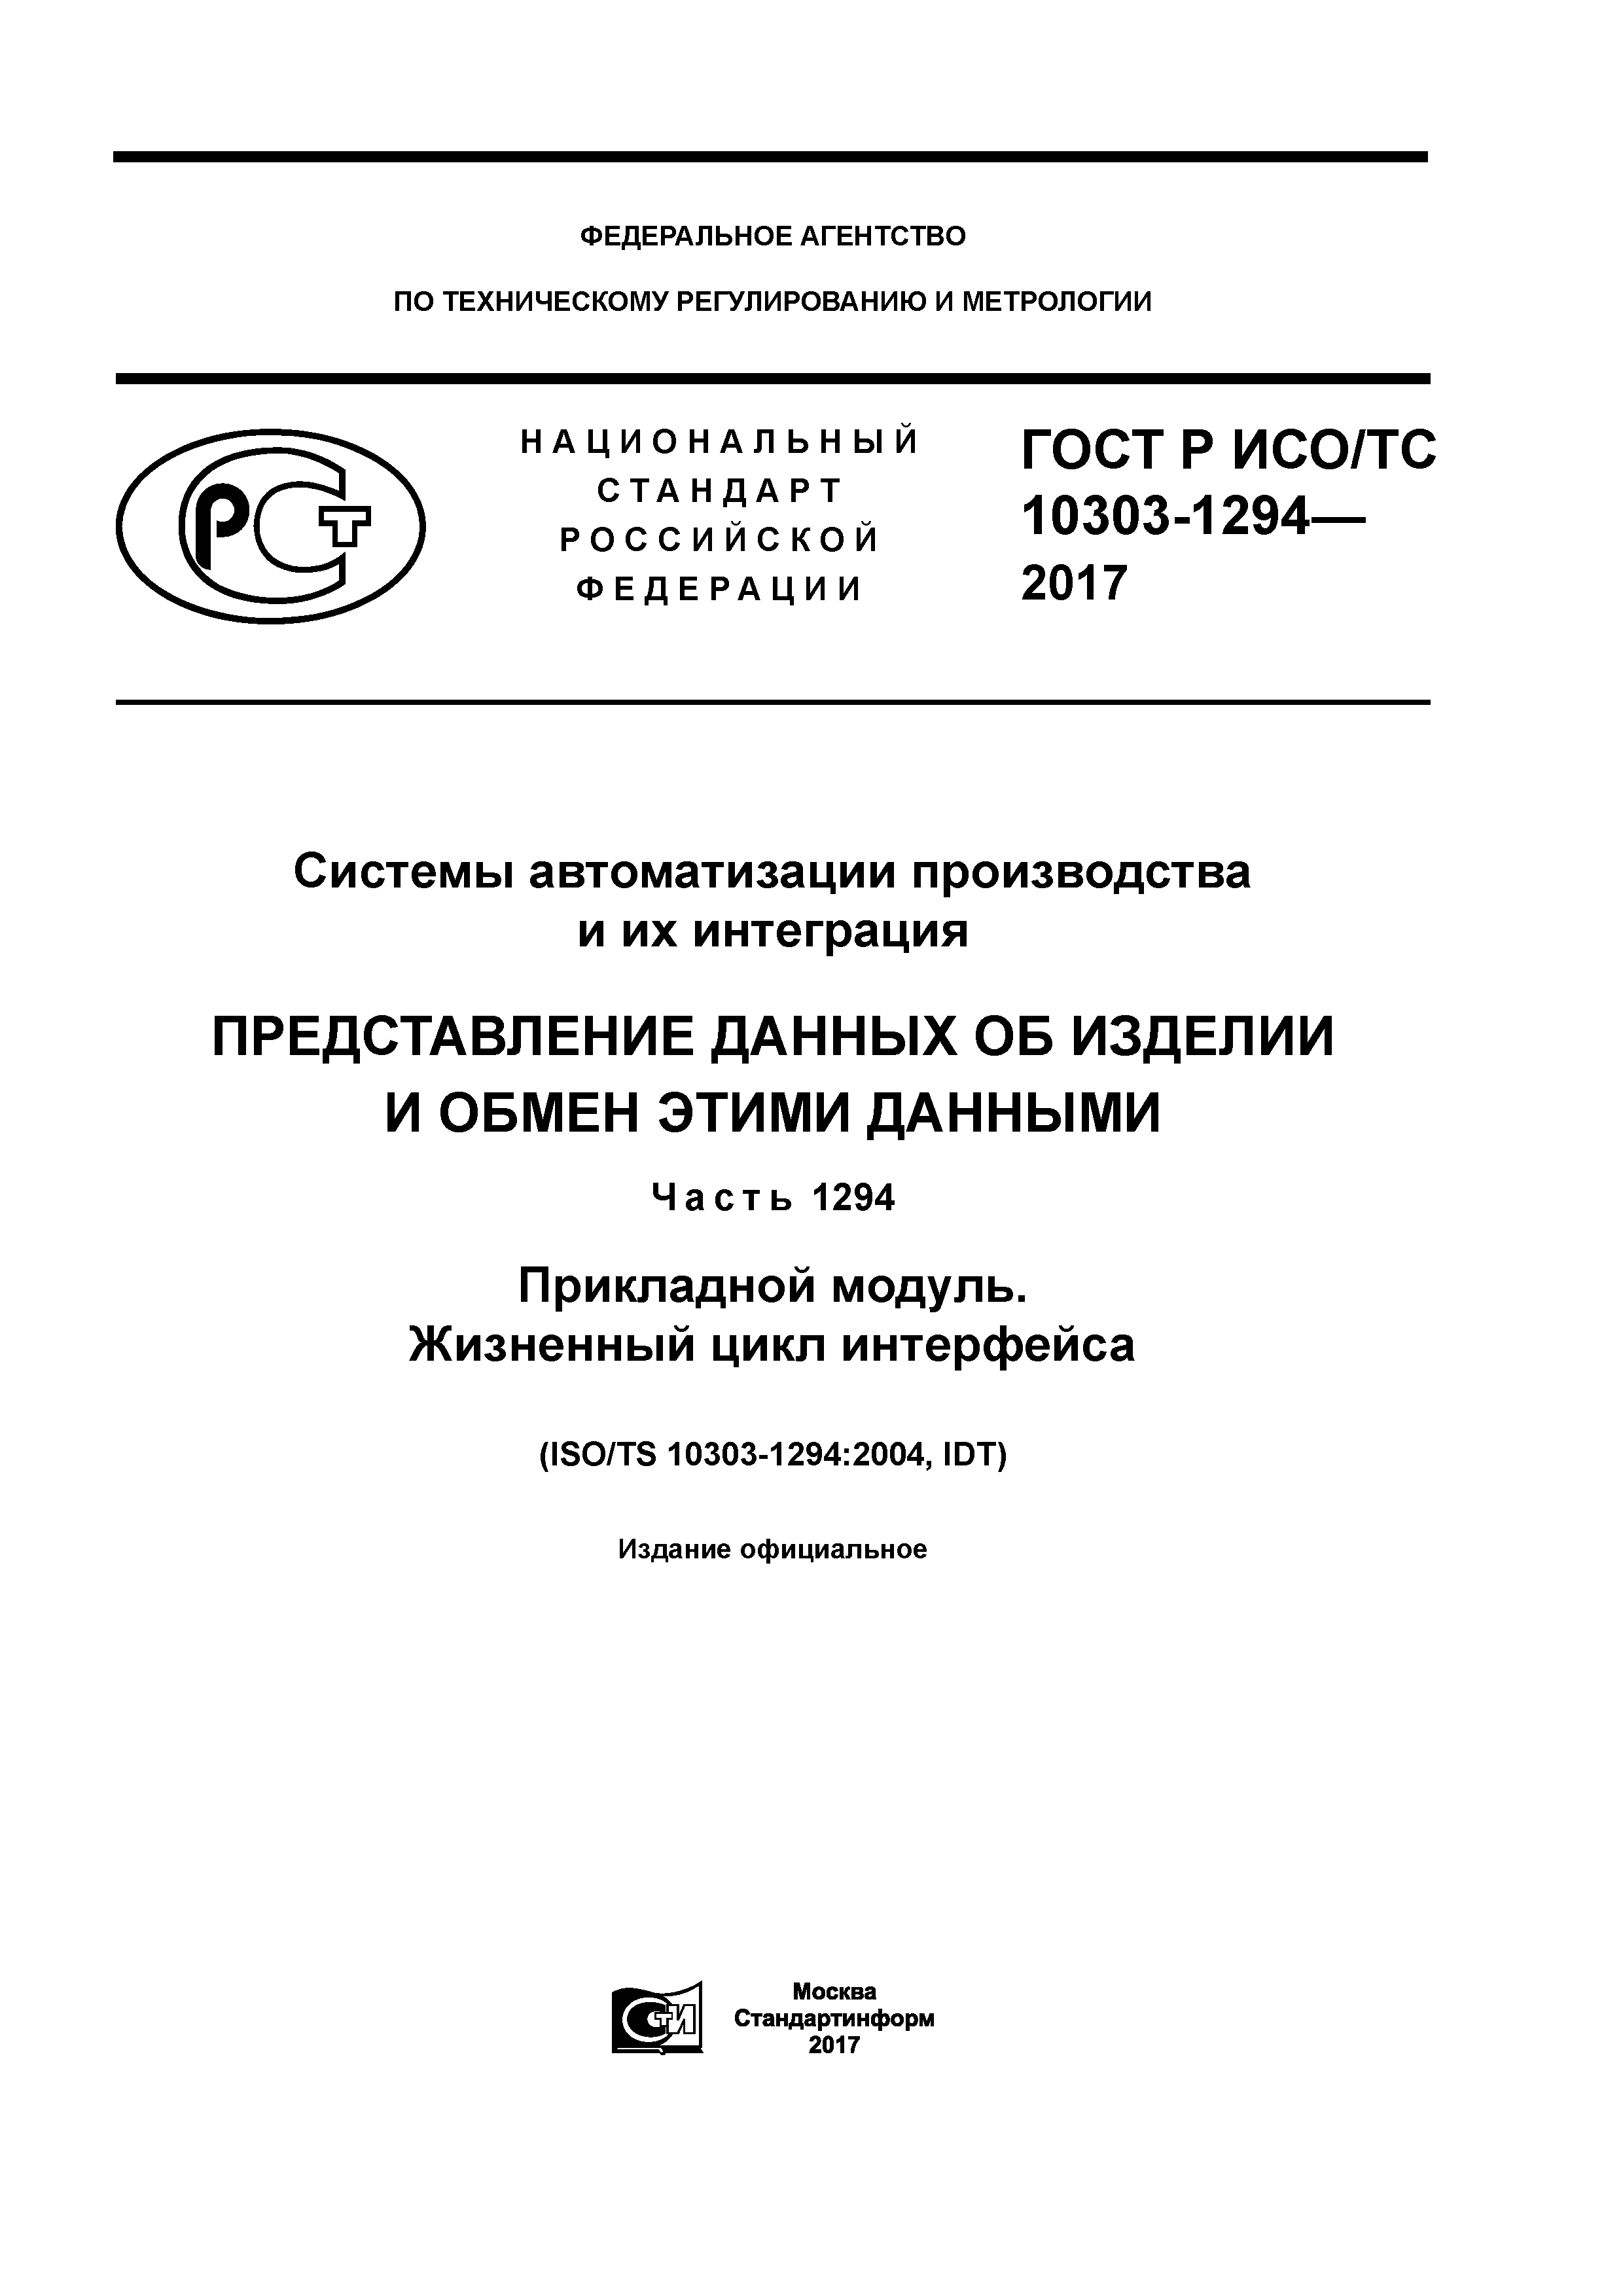 ГОСТ Р ИСО/ТС 10303-1294-2017